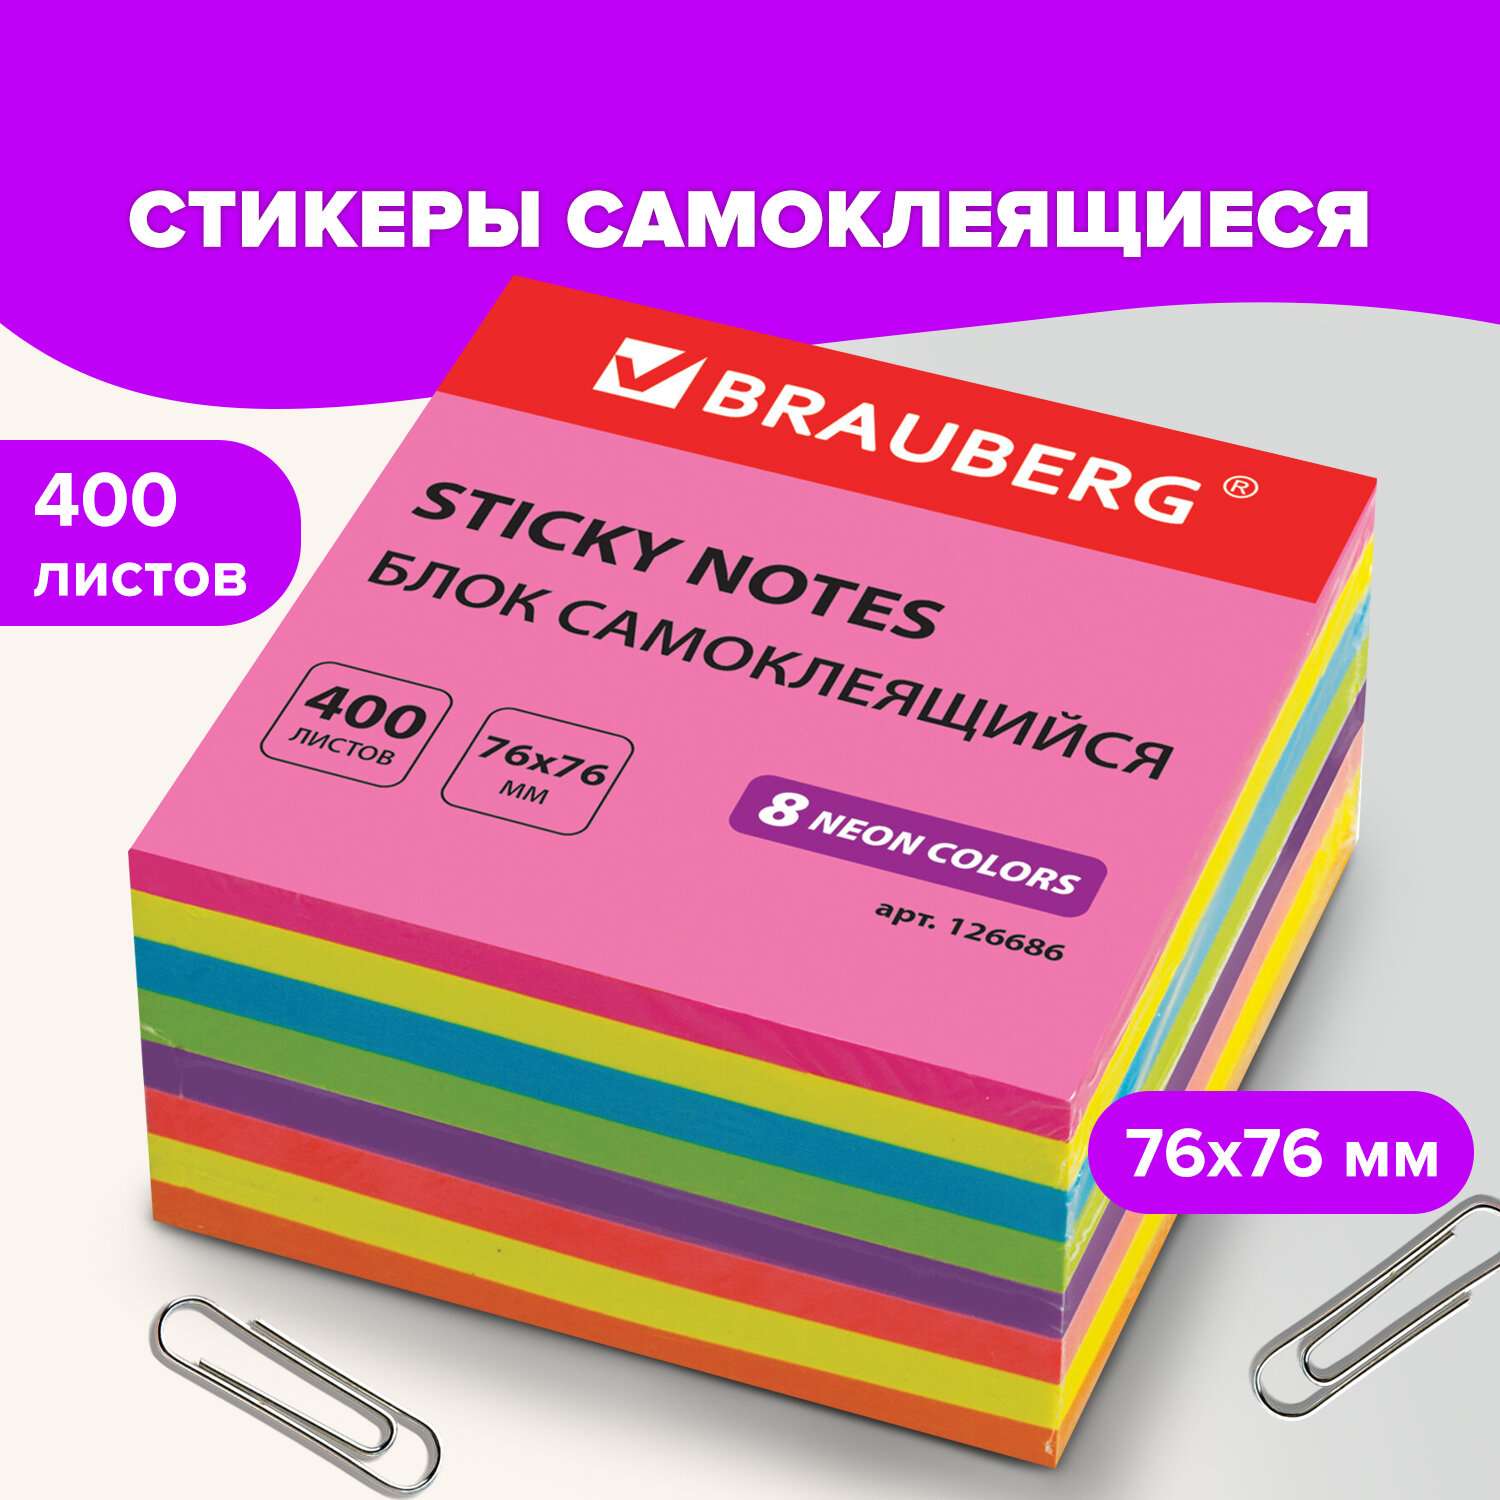 Стикеры самоклеящиеся Brauberg блок для записей и заметок неоновый 400 листов 8 цветов - фото 1